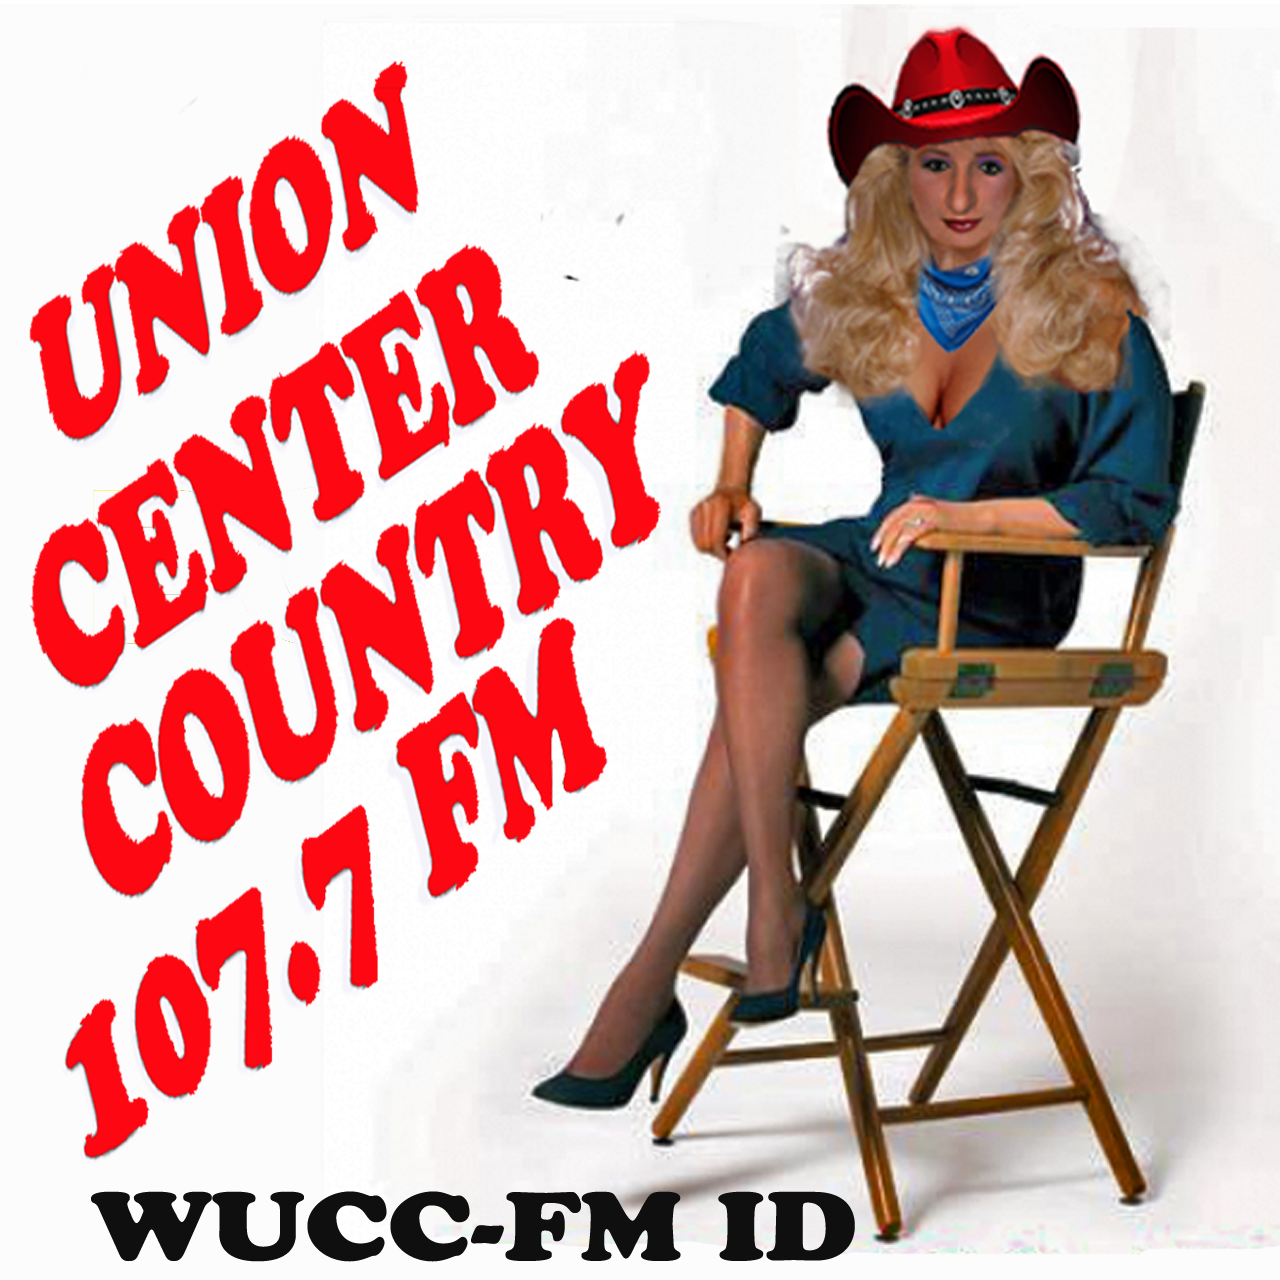 WUCCFM-Union Center Country 107.7FM